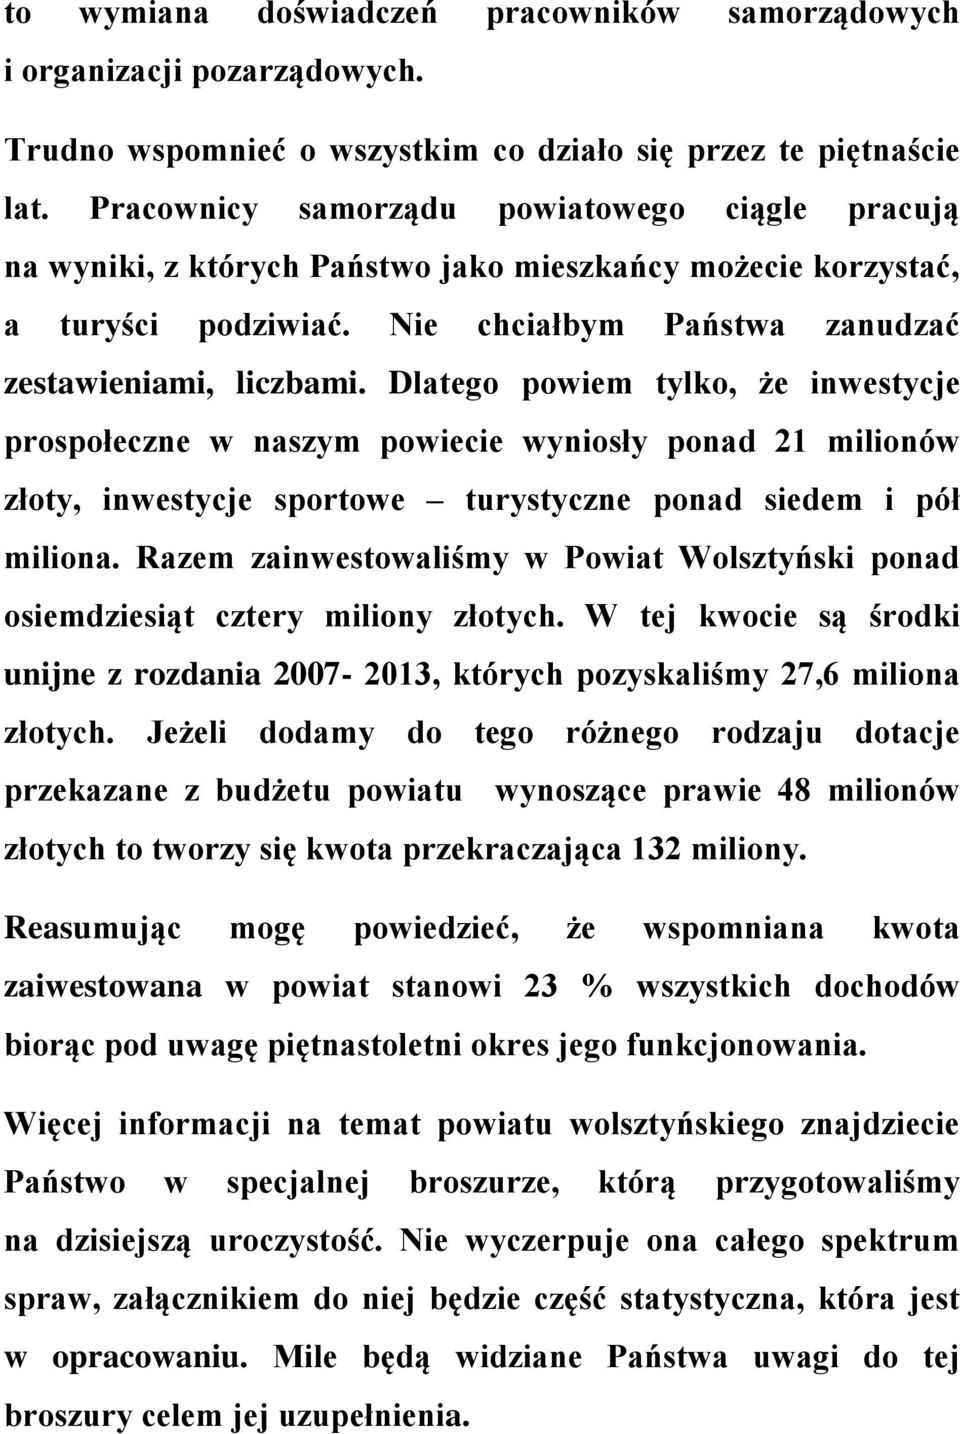 Dlatego powiem tylko, że inwestycje prospołeczne w naszym powiecie wyniosły ponad 21 milionów złoty, inwestycje sportowe turystyczne ponad siedem i pół miliona.